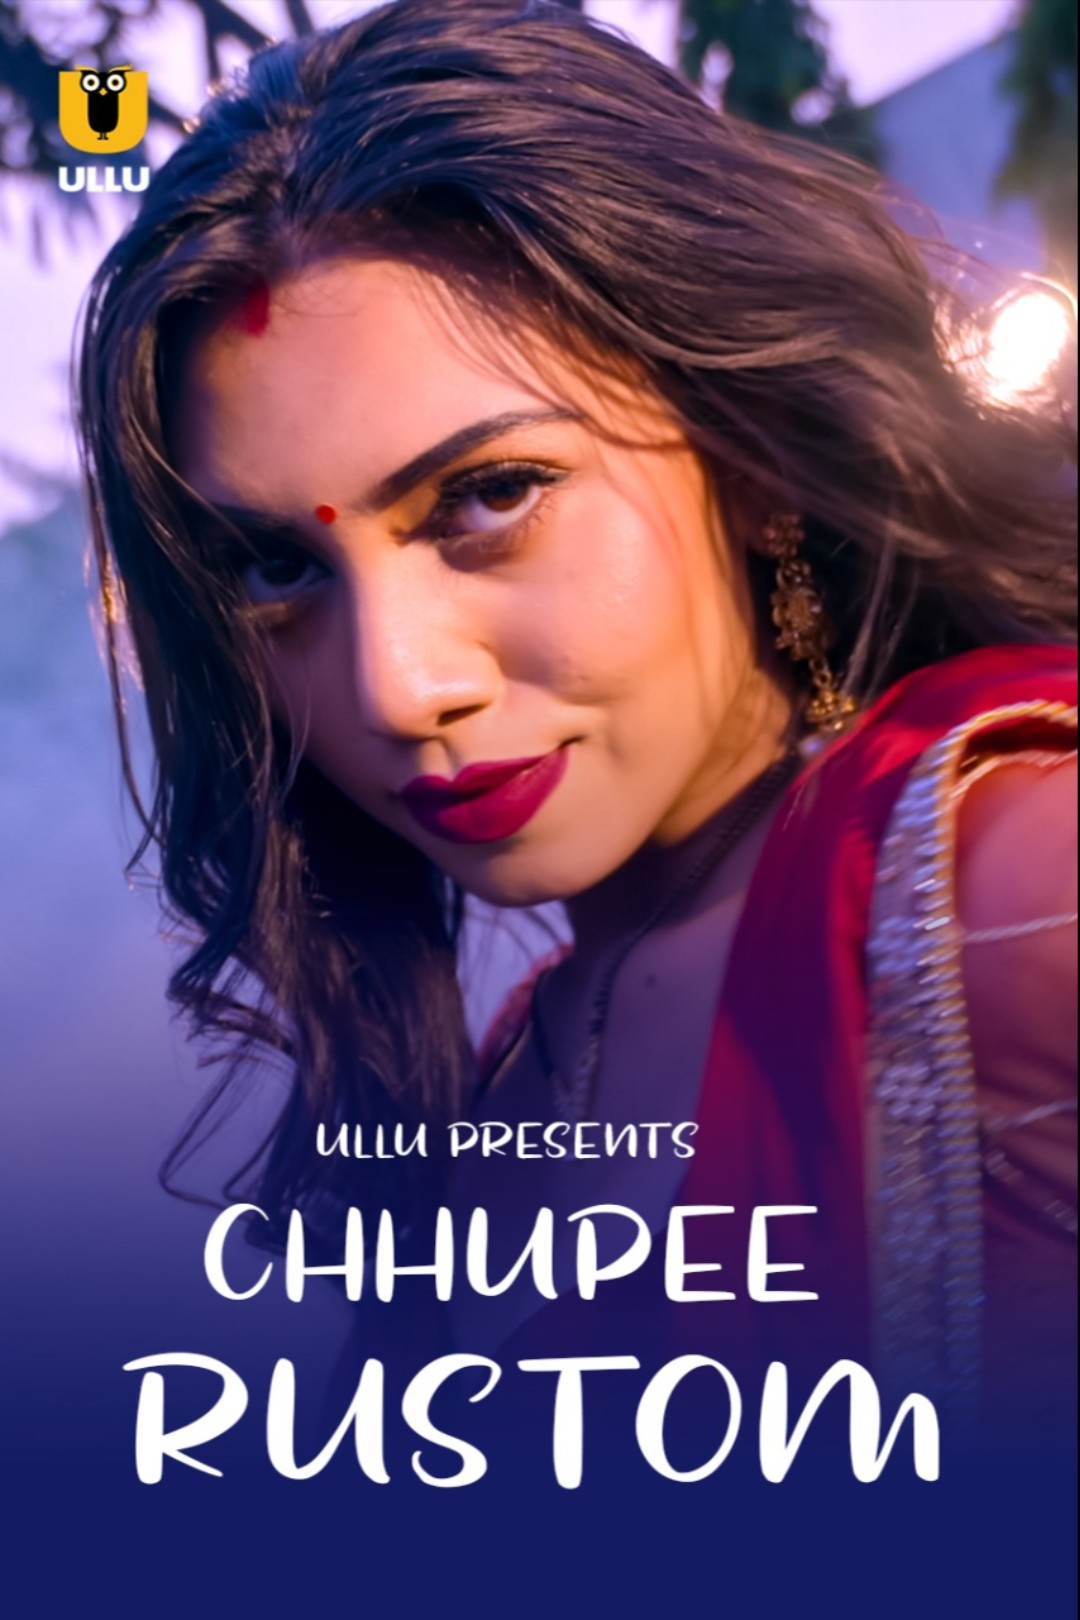 Chhupee Rustom (2021) Season 1 Ullu Originals (2021)